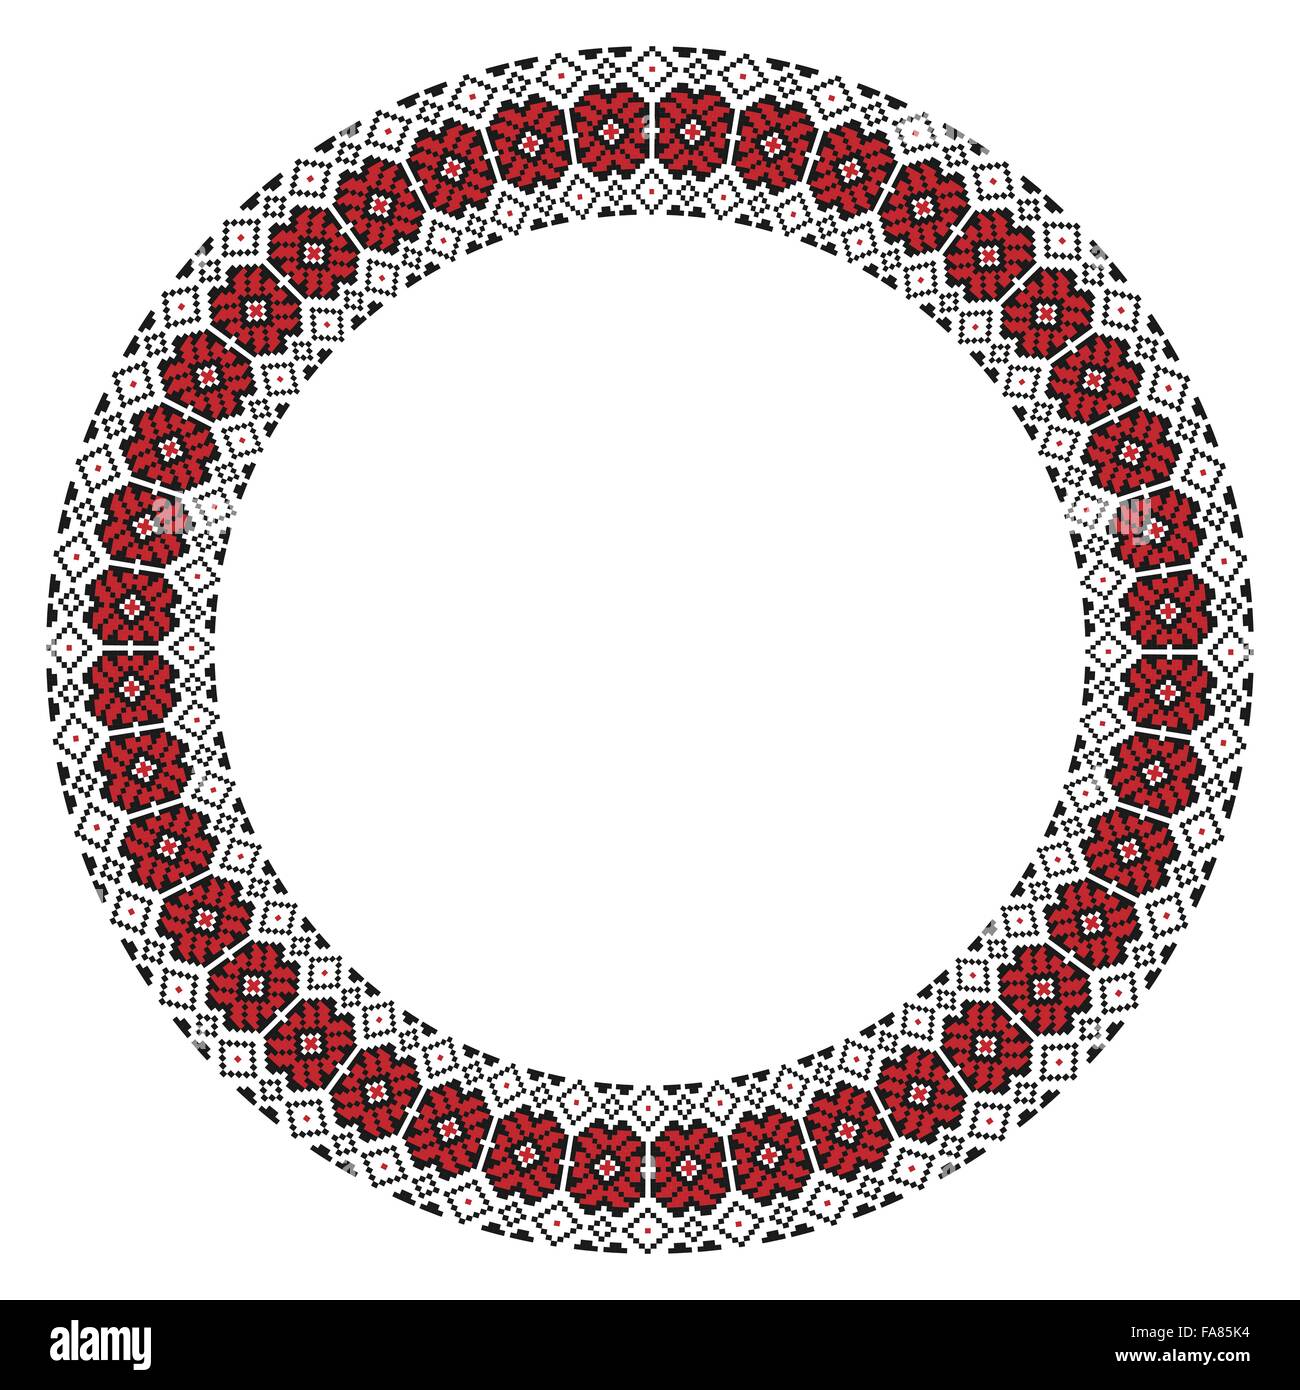 Vektor-Illustration der traditionellen slawischen Runde gestickte Muster für Ihr design Stock Vektor